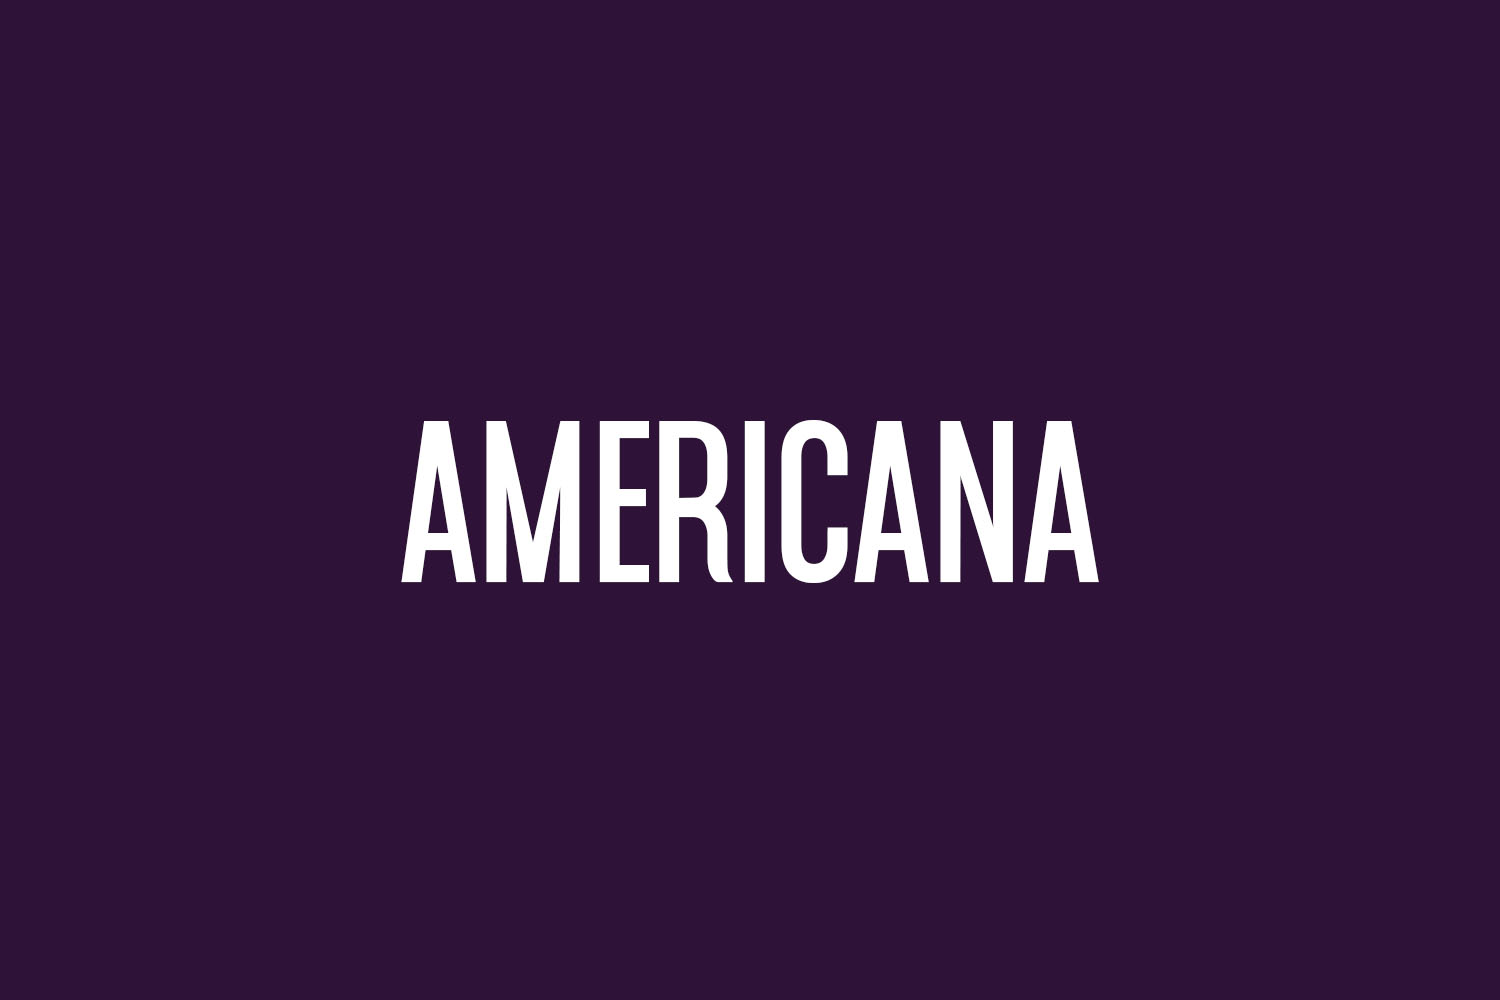 Americana Free Font